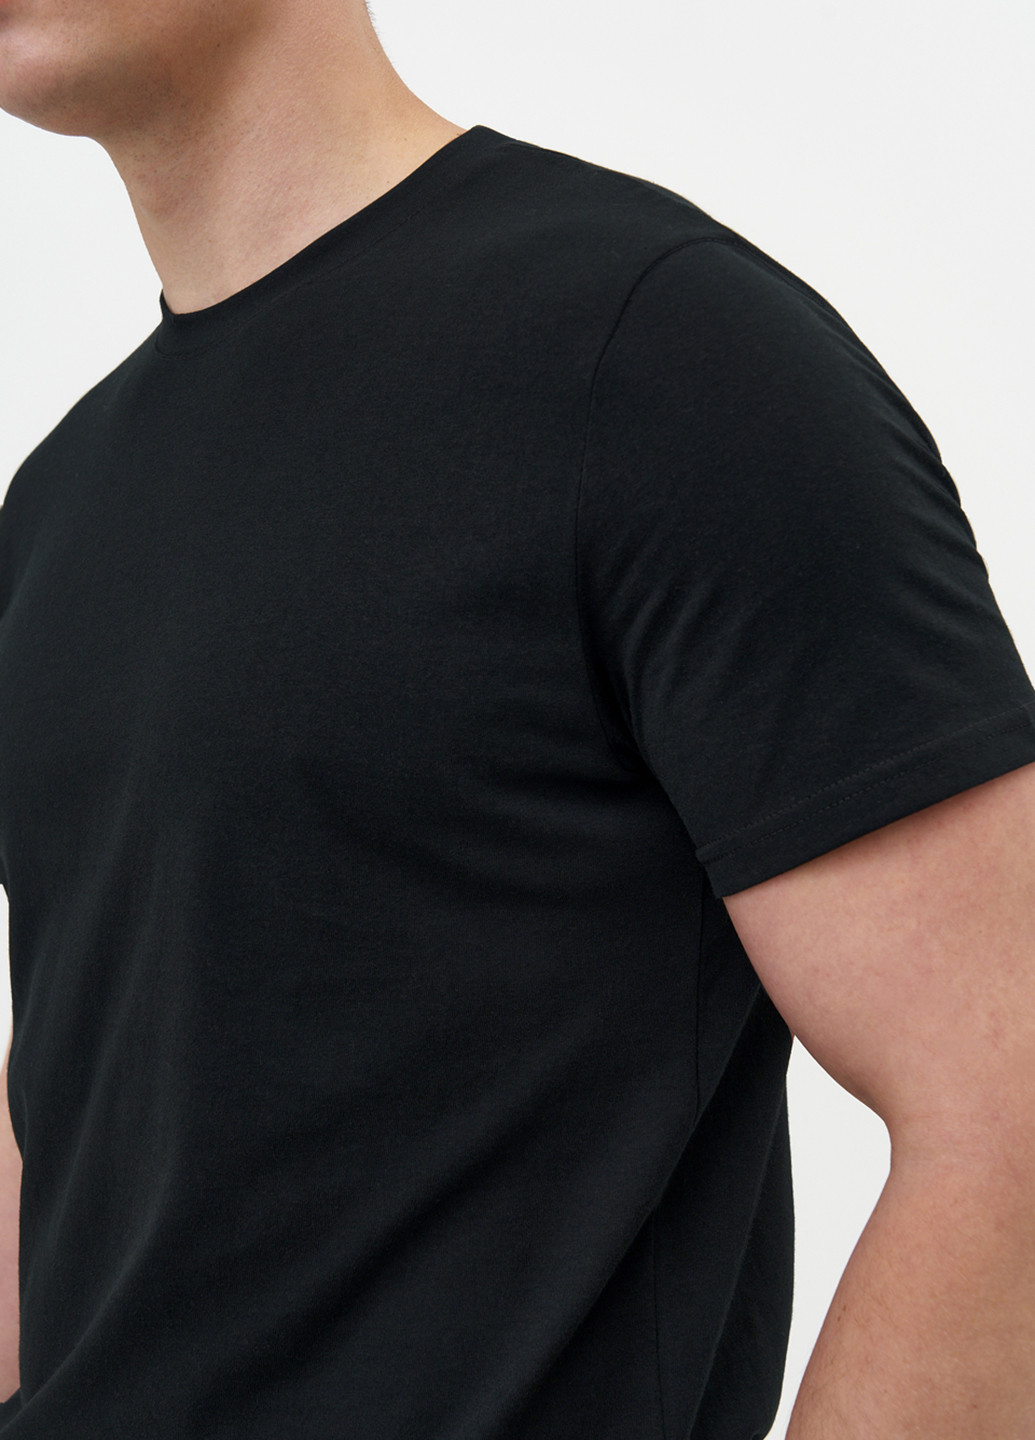 Черная летняя футболка мужская базовая KASTA design